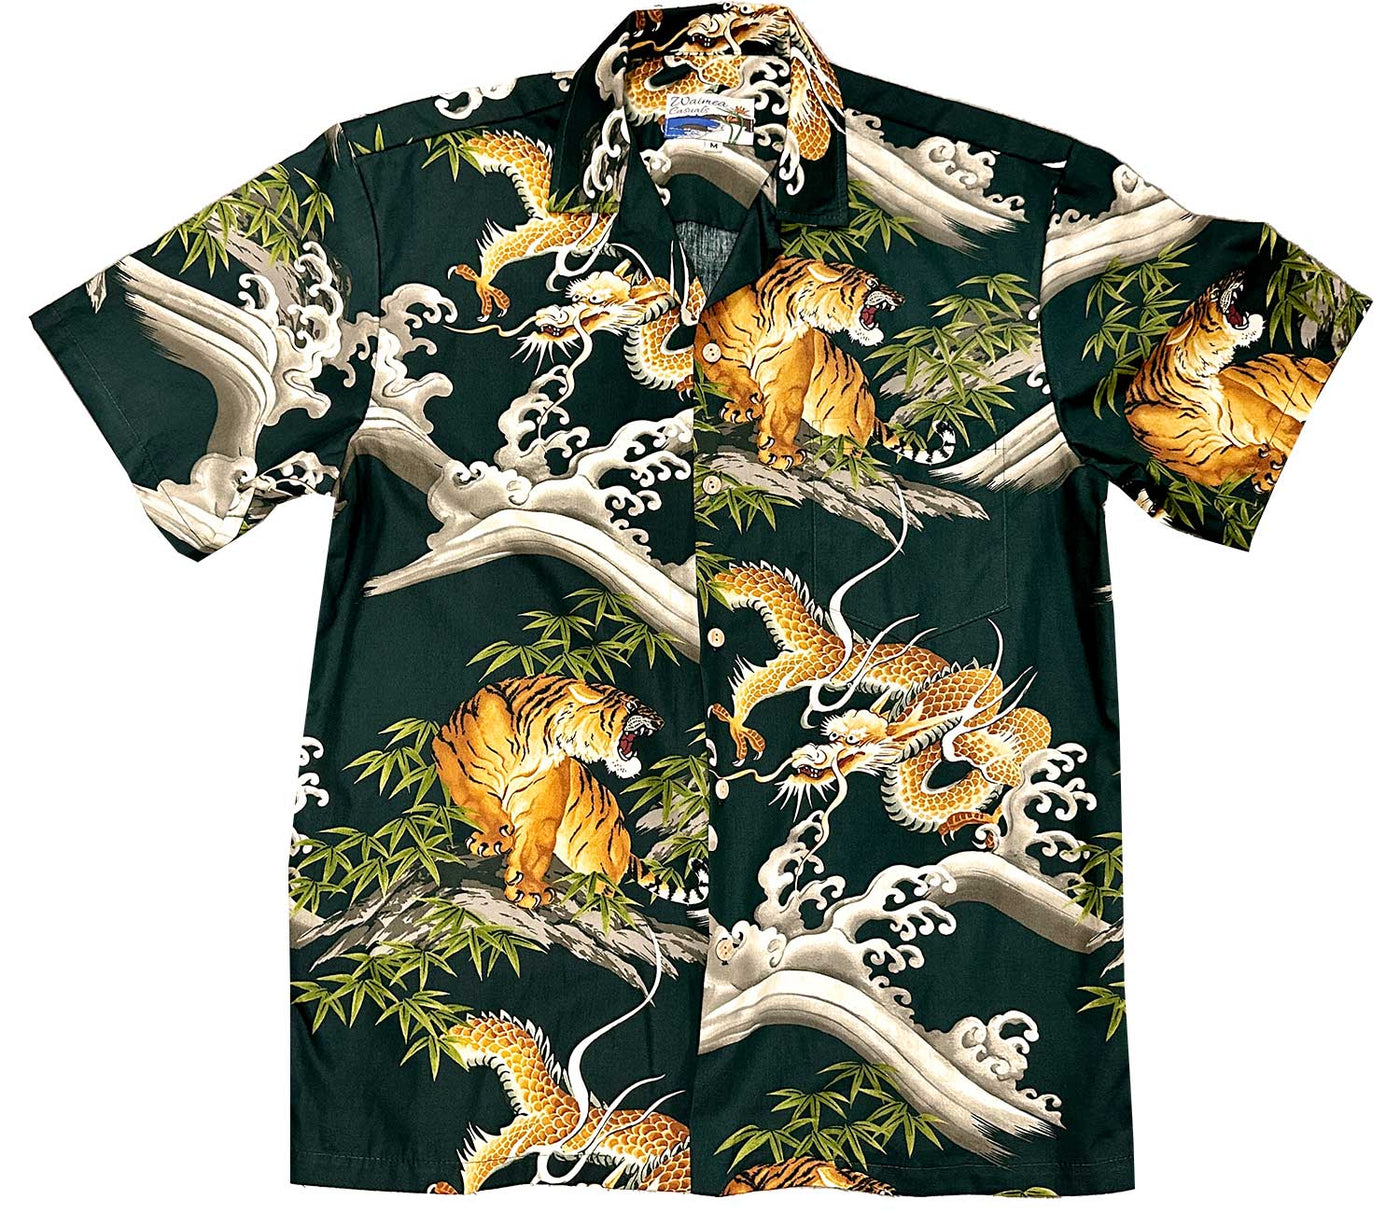 Dragons & Tigers Green Hawaiian Shirt